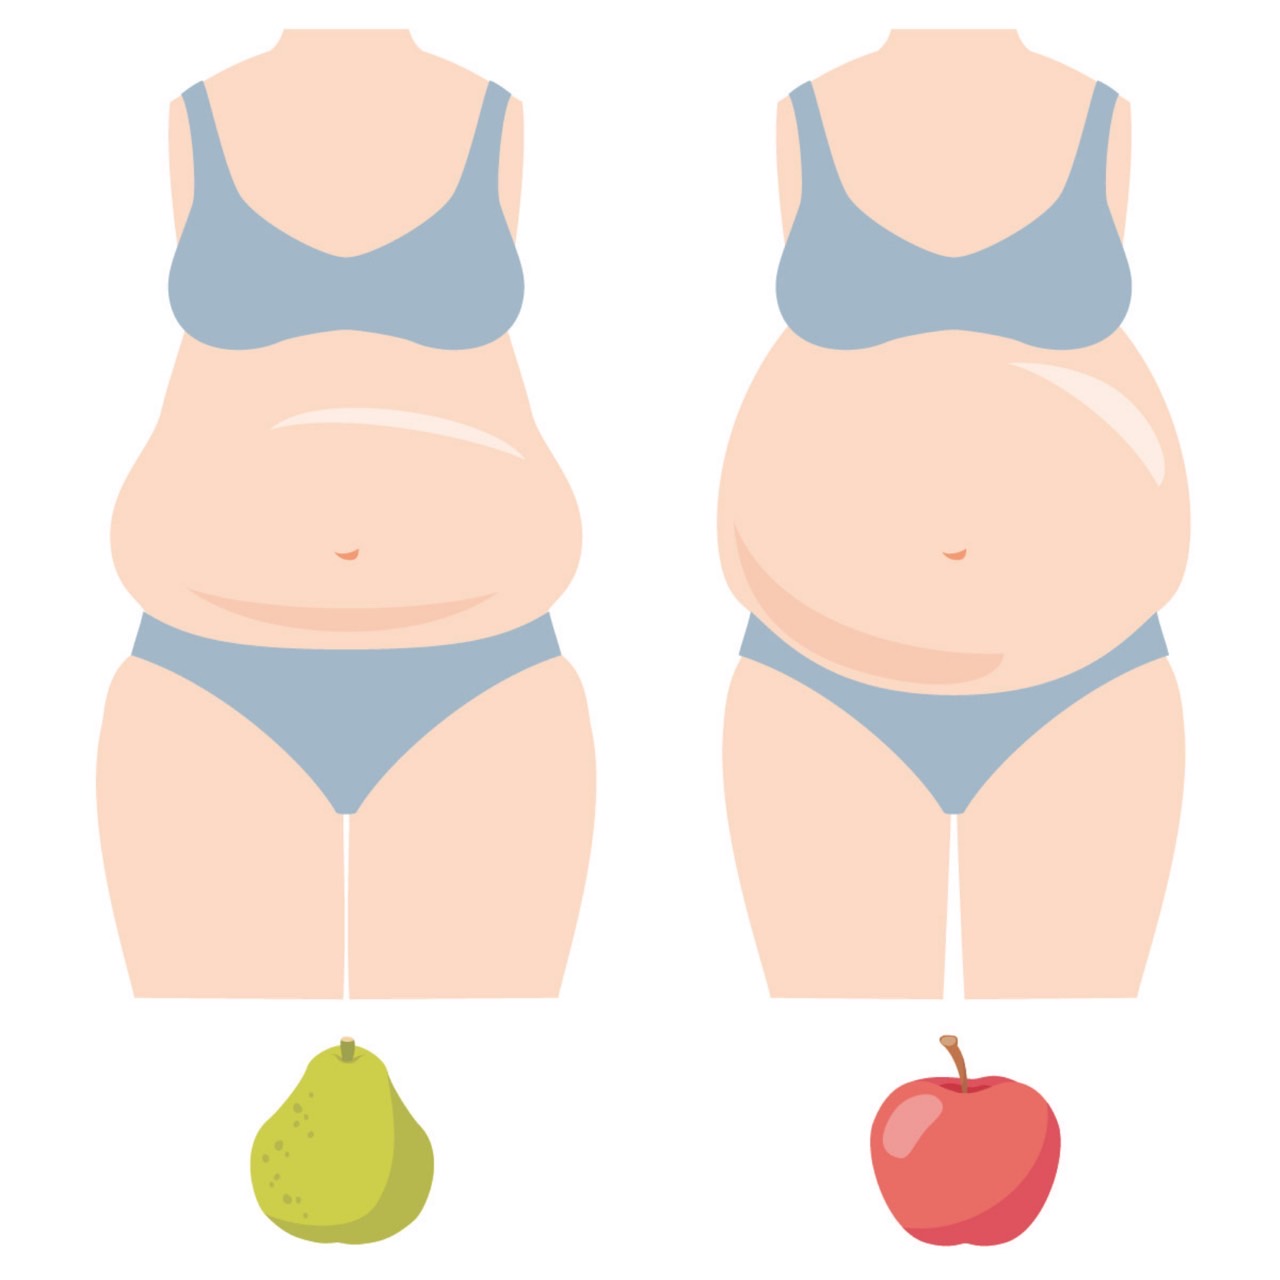 内臓脂肪（りんご体型）と皮下脂肪（洋梨体型）の見た目や特徴の違いについて